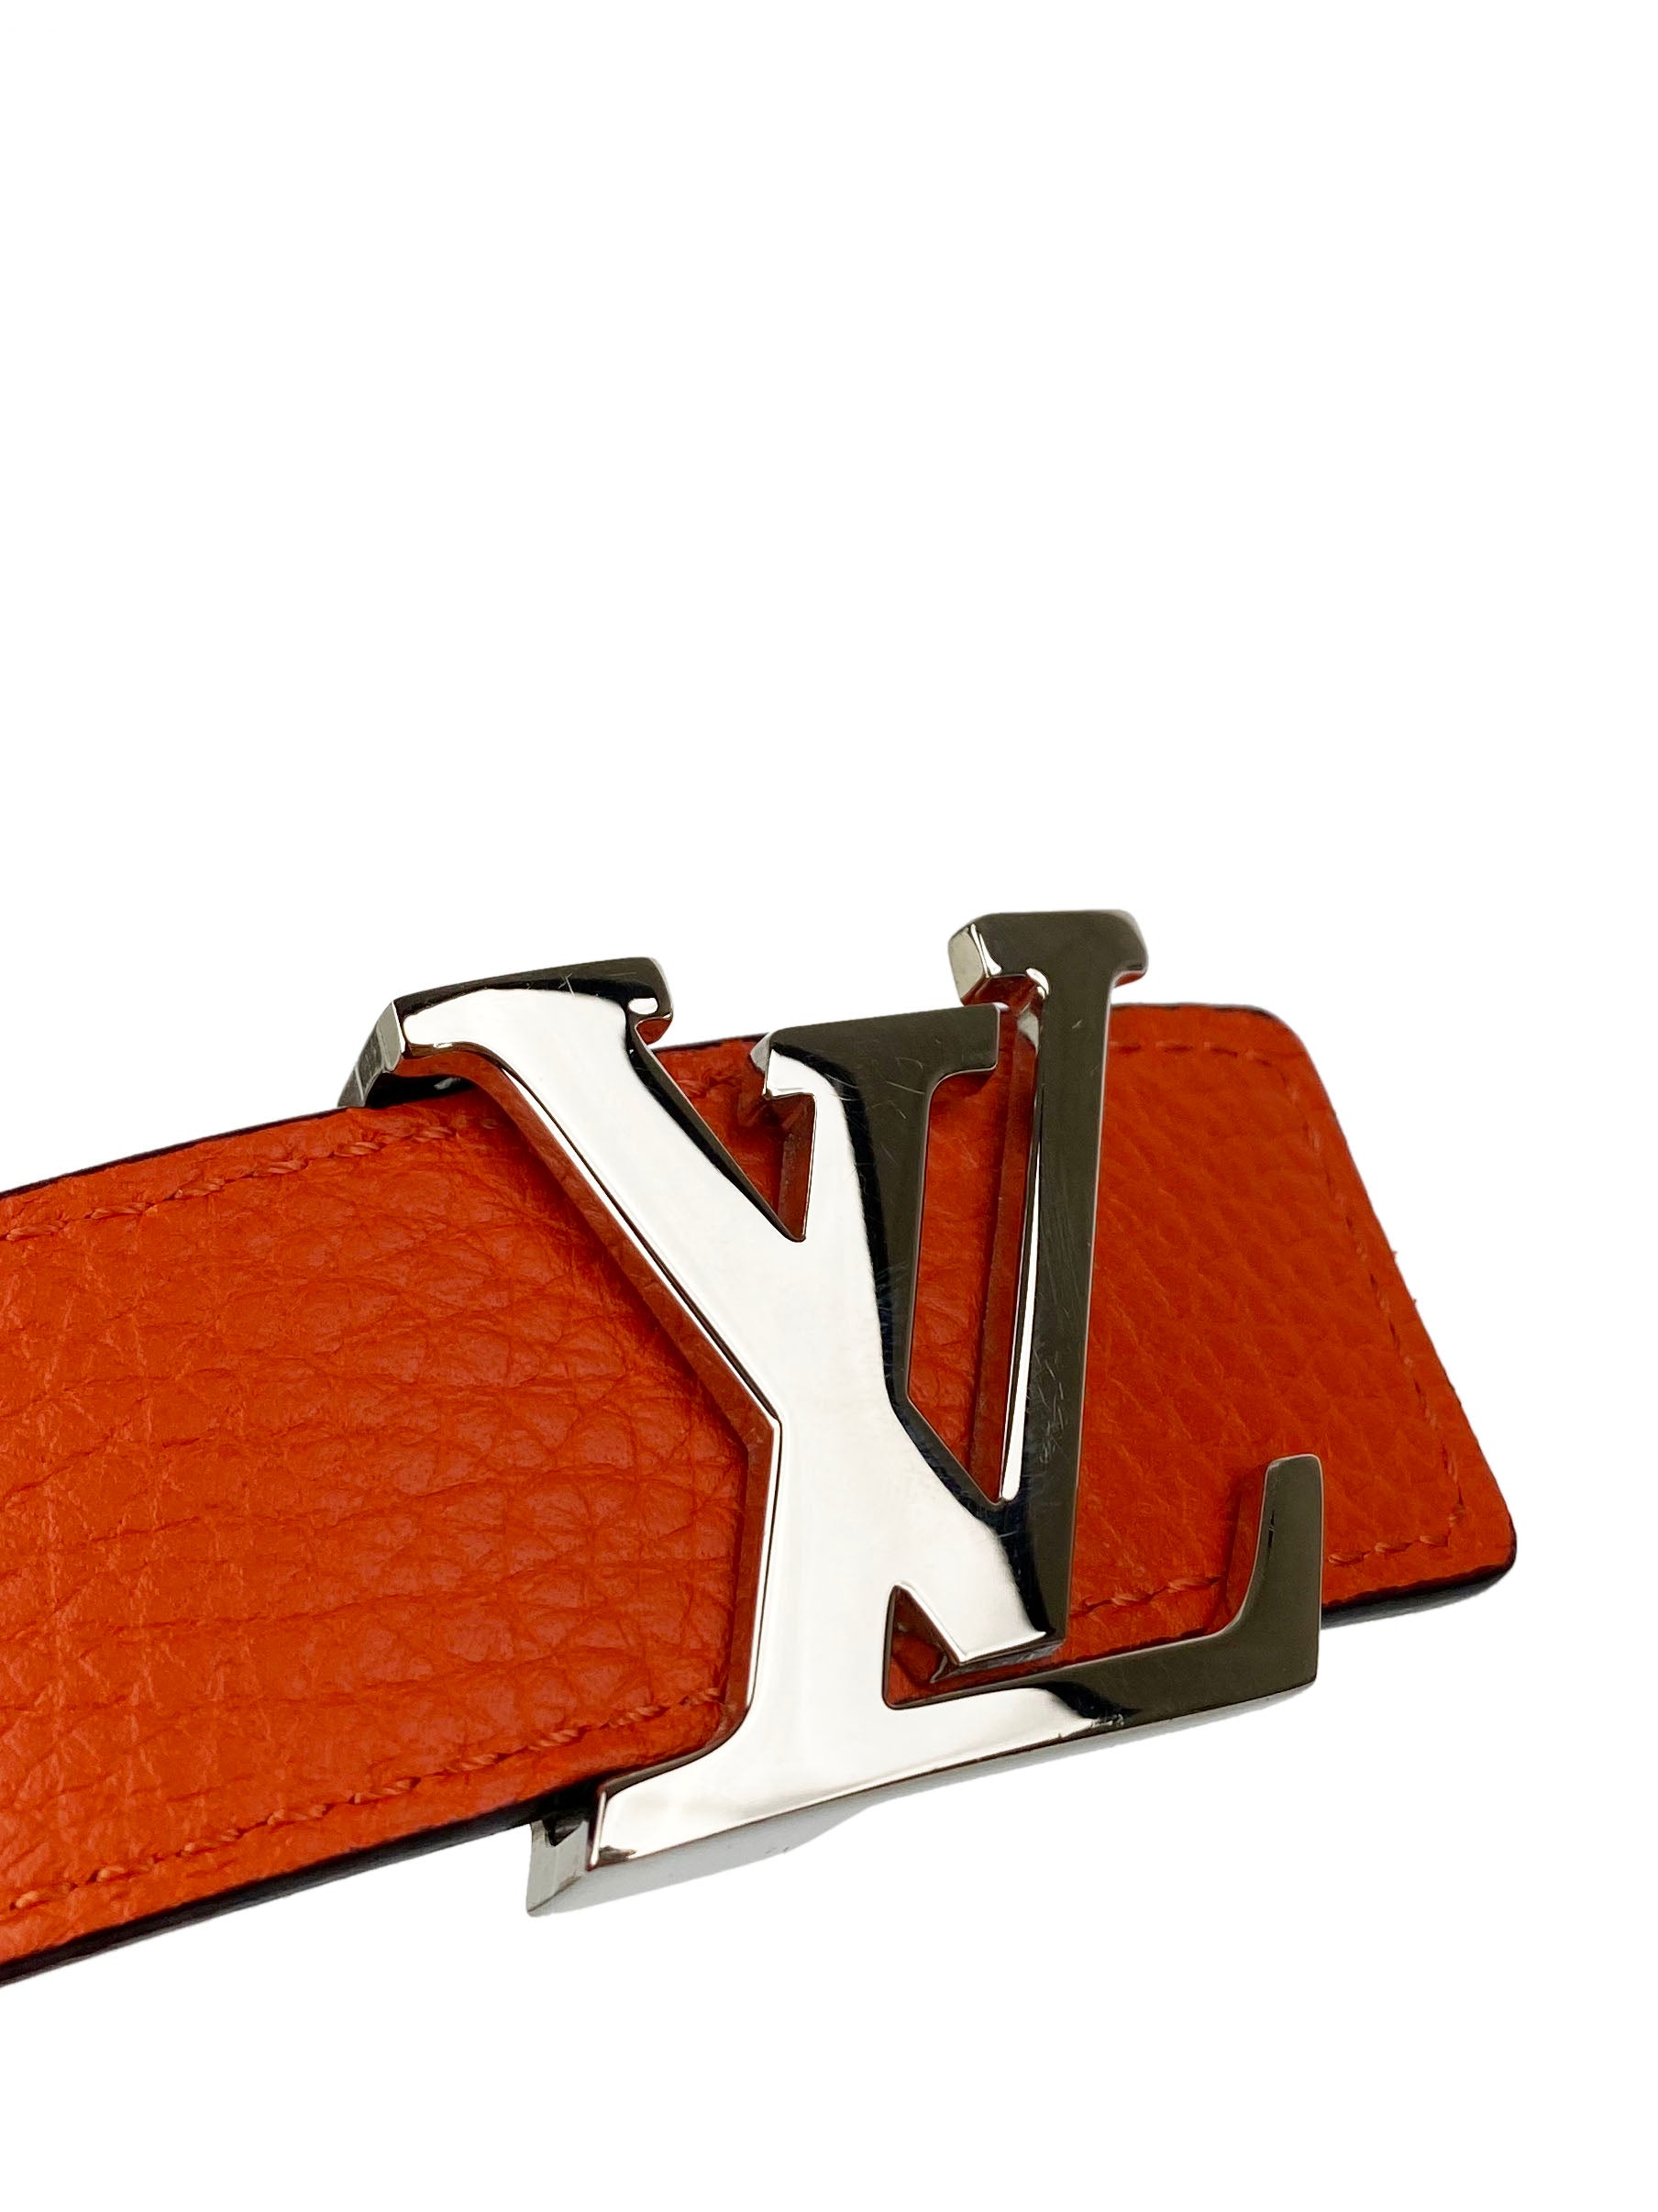 Louis Vuitton Orange & Brown Reversible Belt 90